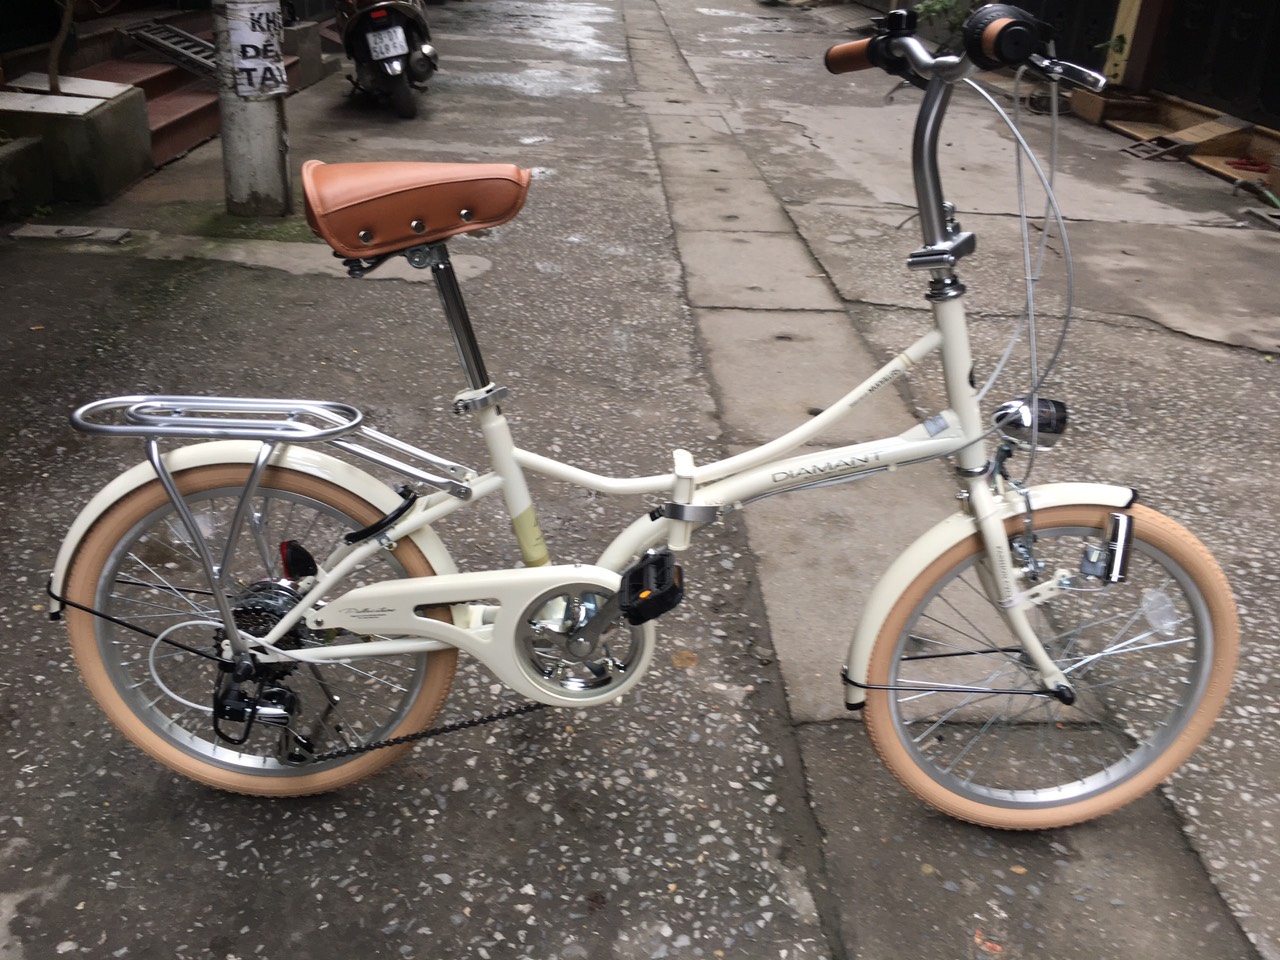 Xe đạp gấp hiệu Mypallas của Nhật hàng mới (Còn xe)